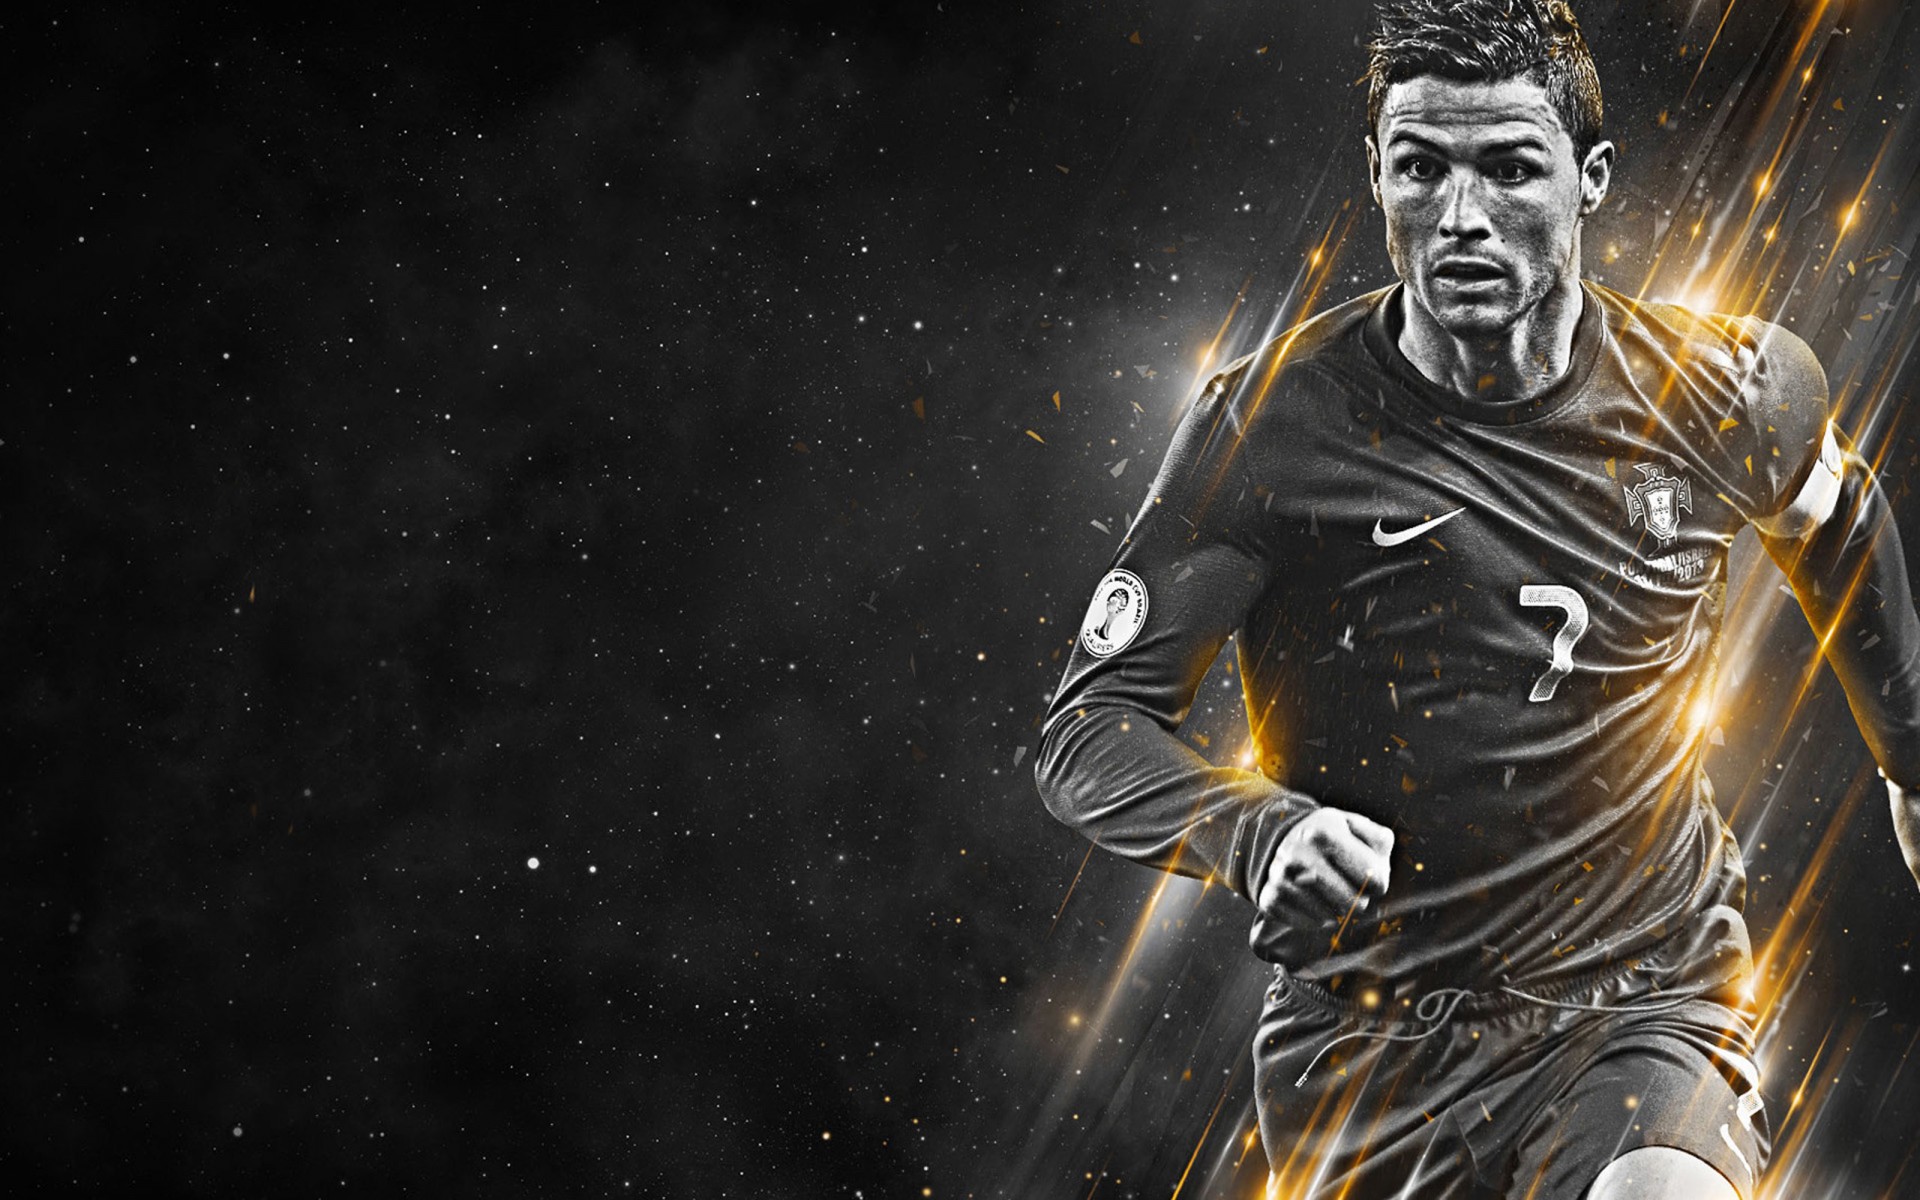 Cristiano Ronaldo black and white wallpaper - Cristiano Ronaldo Wallpapers